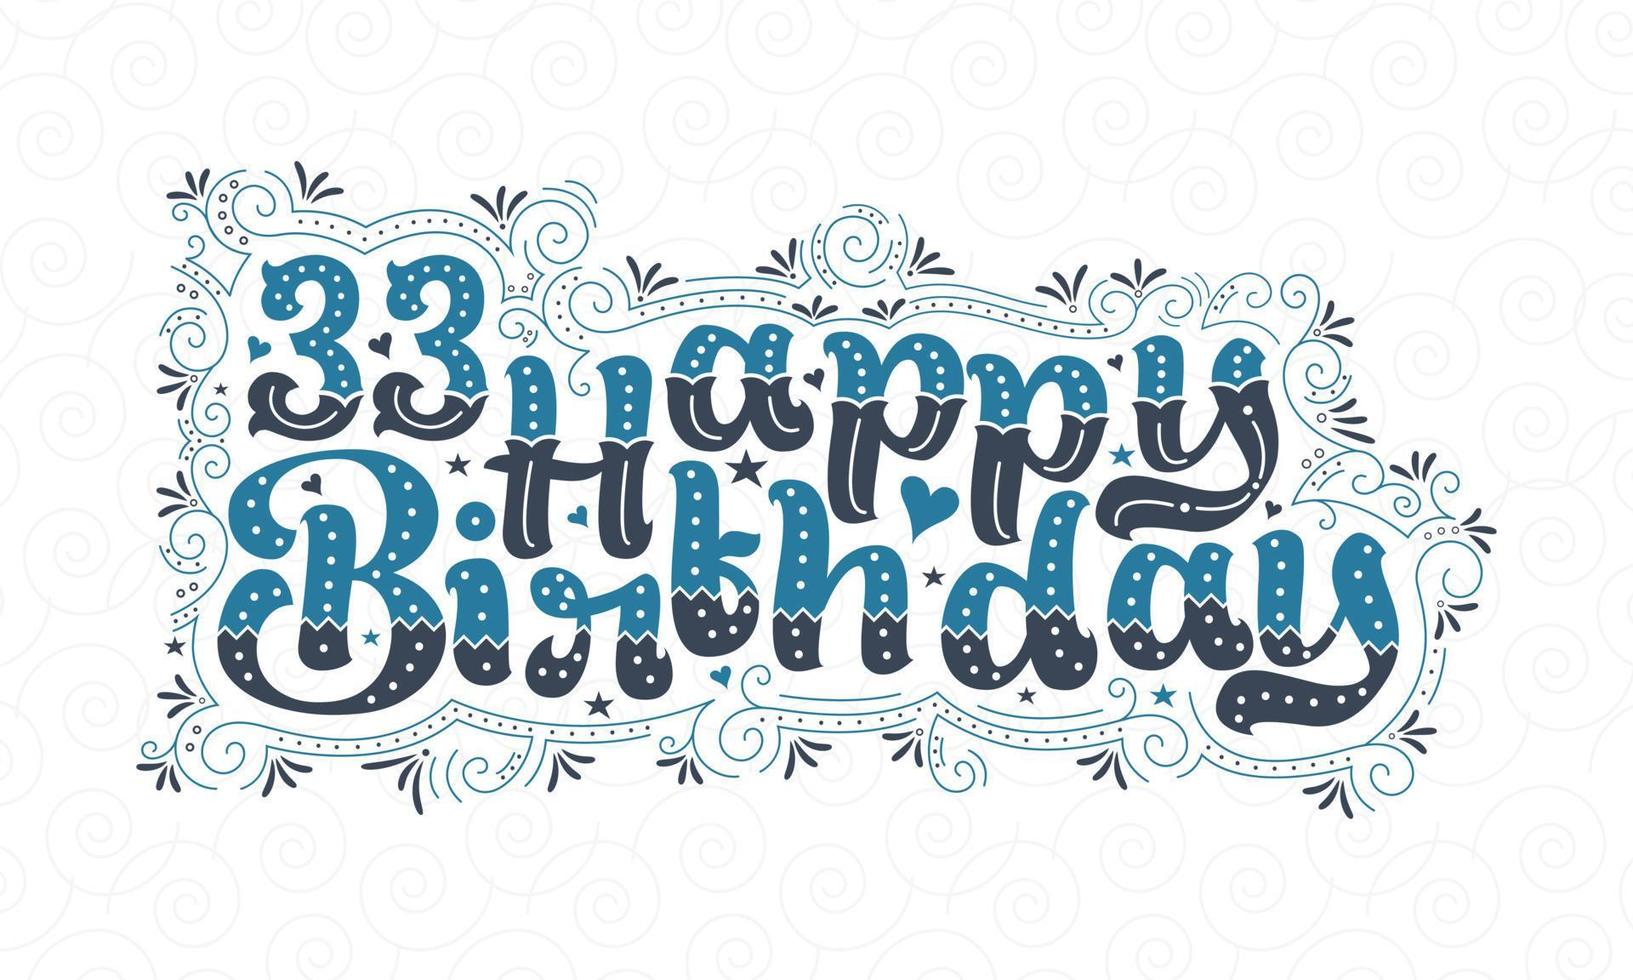 33a scritta di buon compleanno, bellissimo design tipografico di 33 anni con punti, linee e foglie blu e nere. vettore